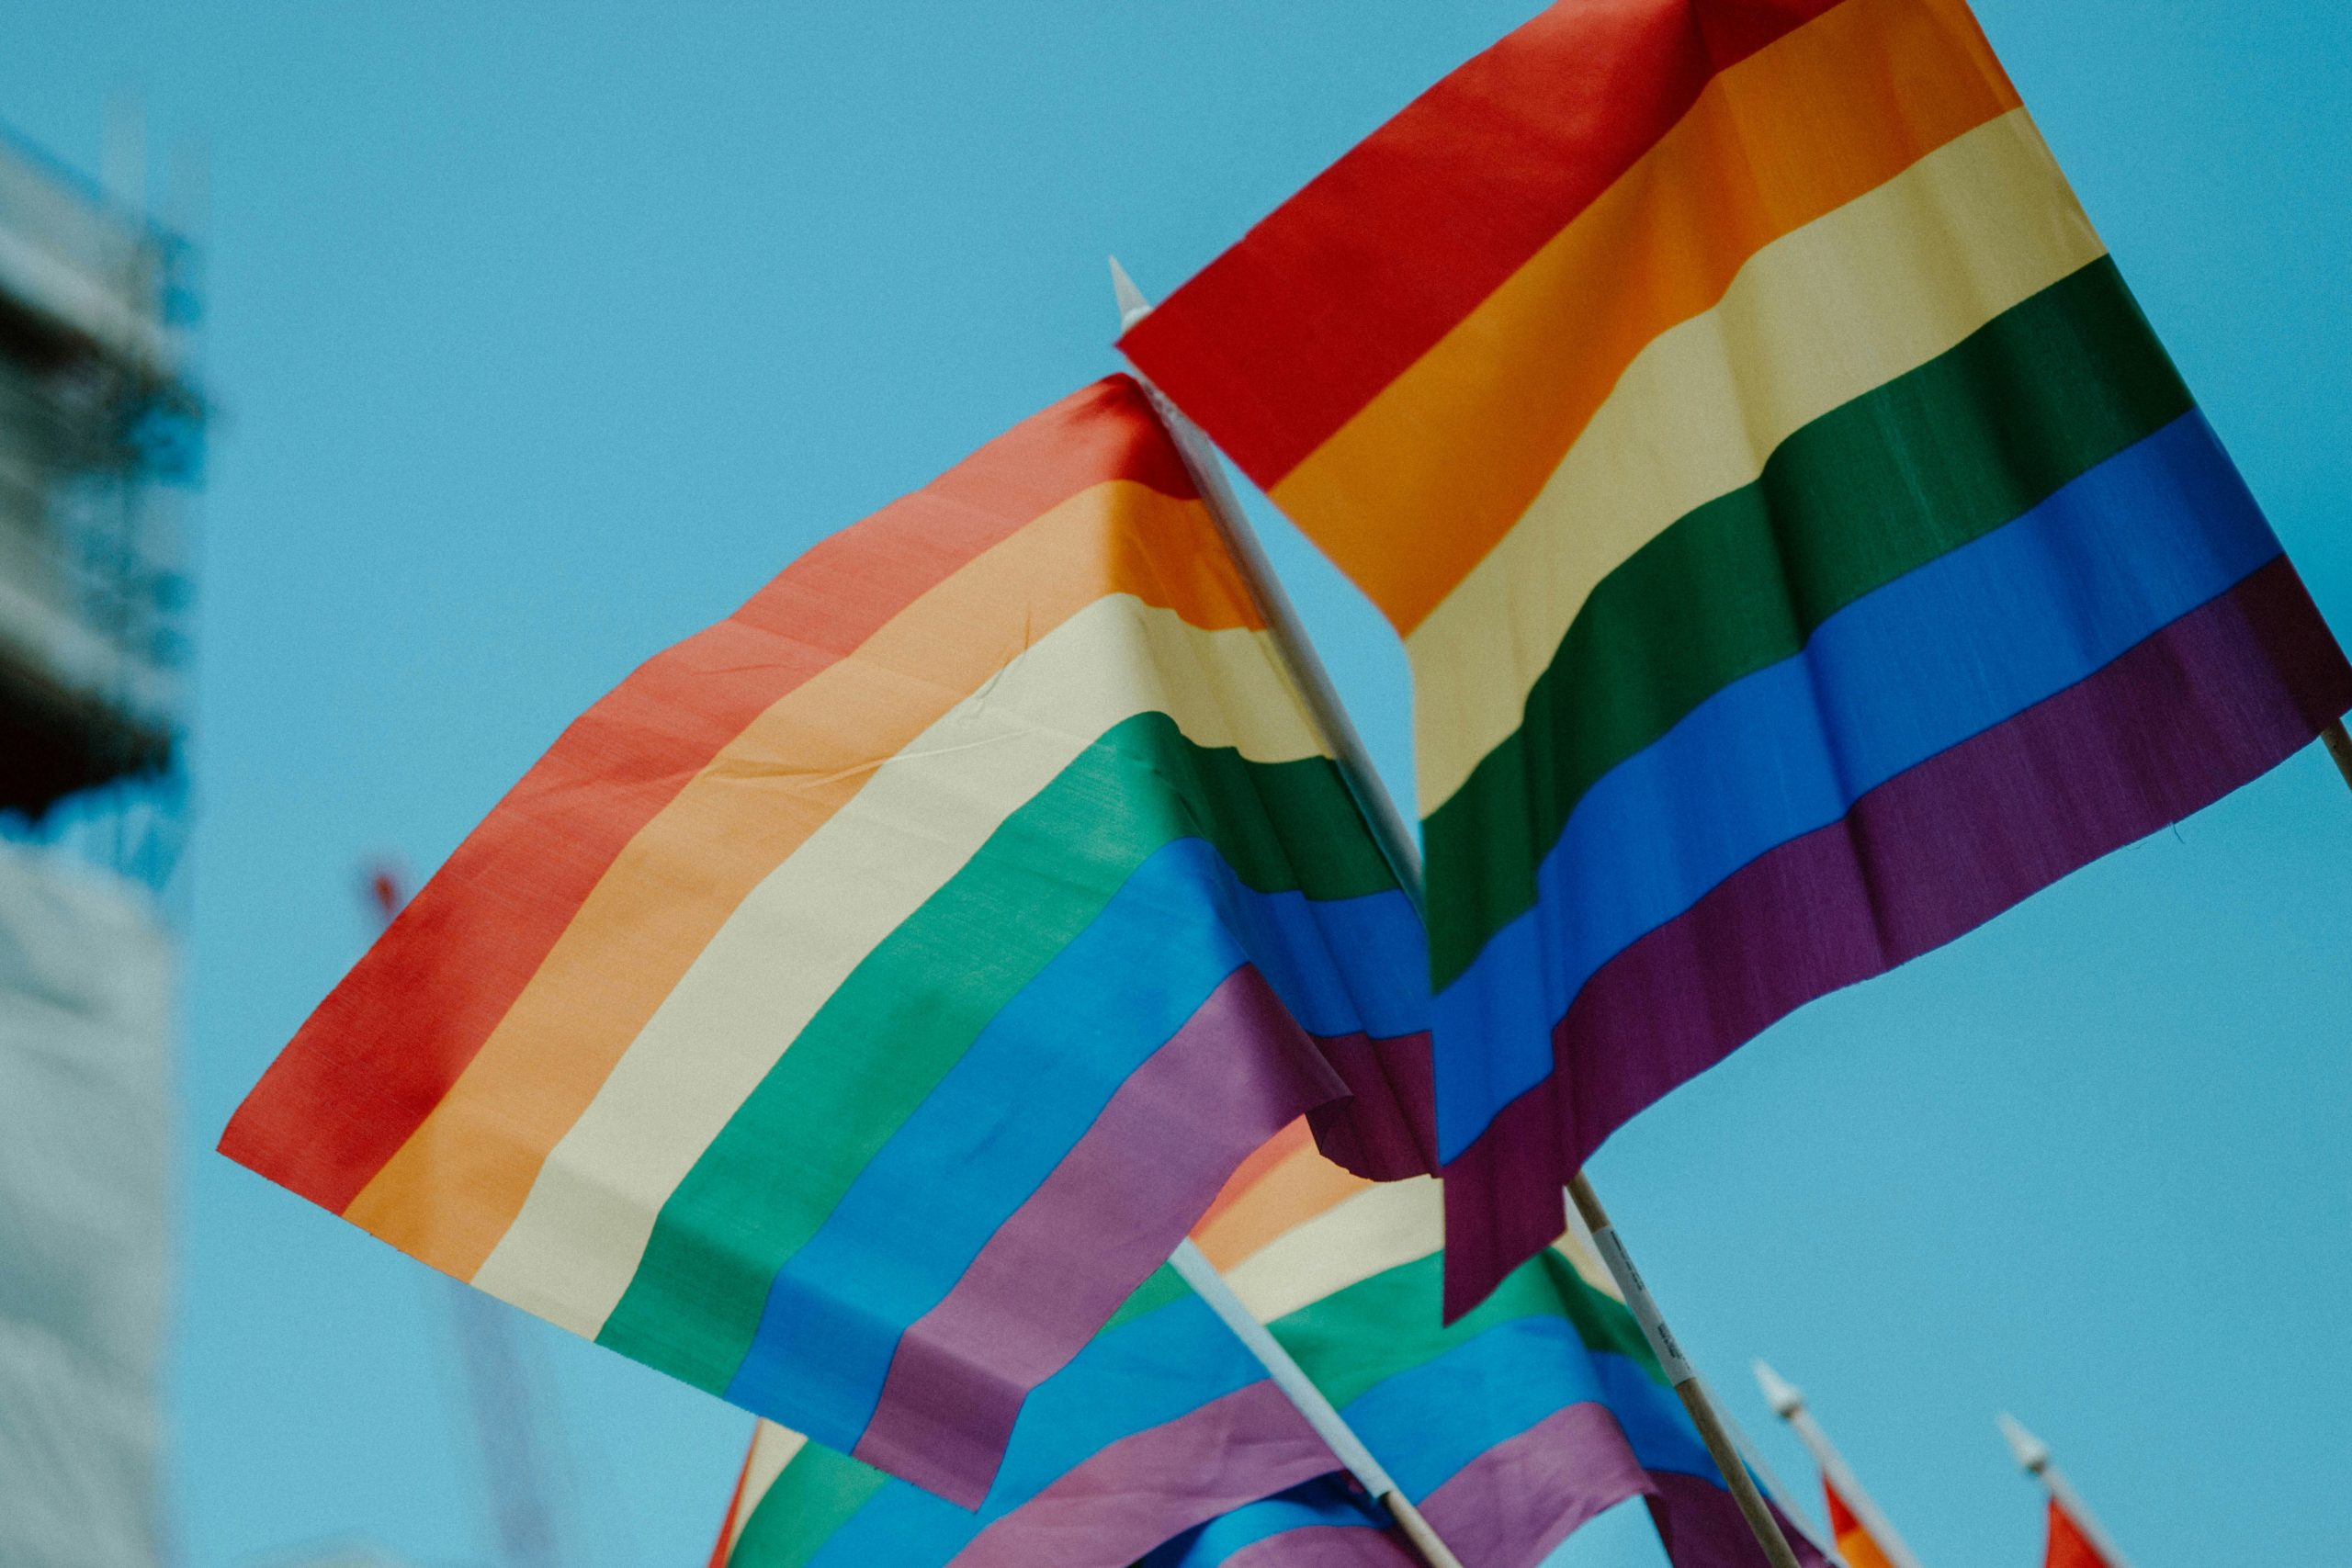  Día Internacional contra la Homofobia, Transfobia y Bifobia: origen y conmemoración 